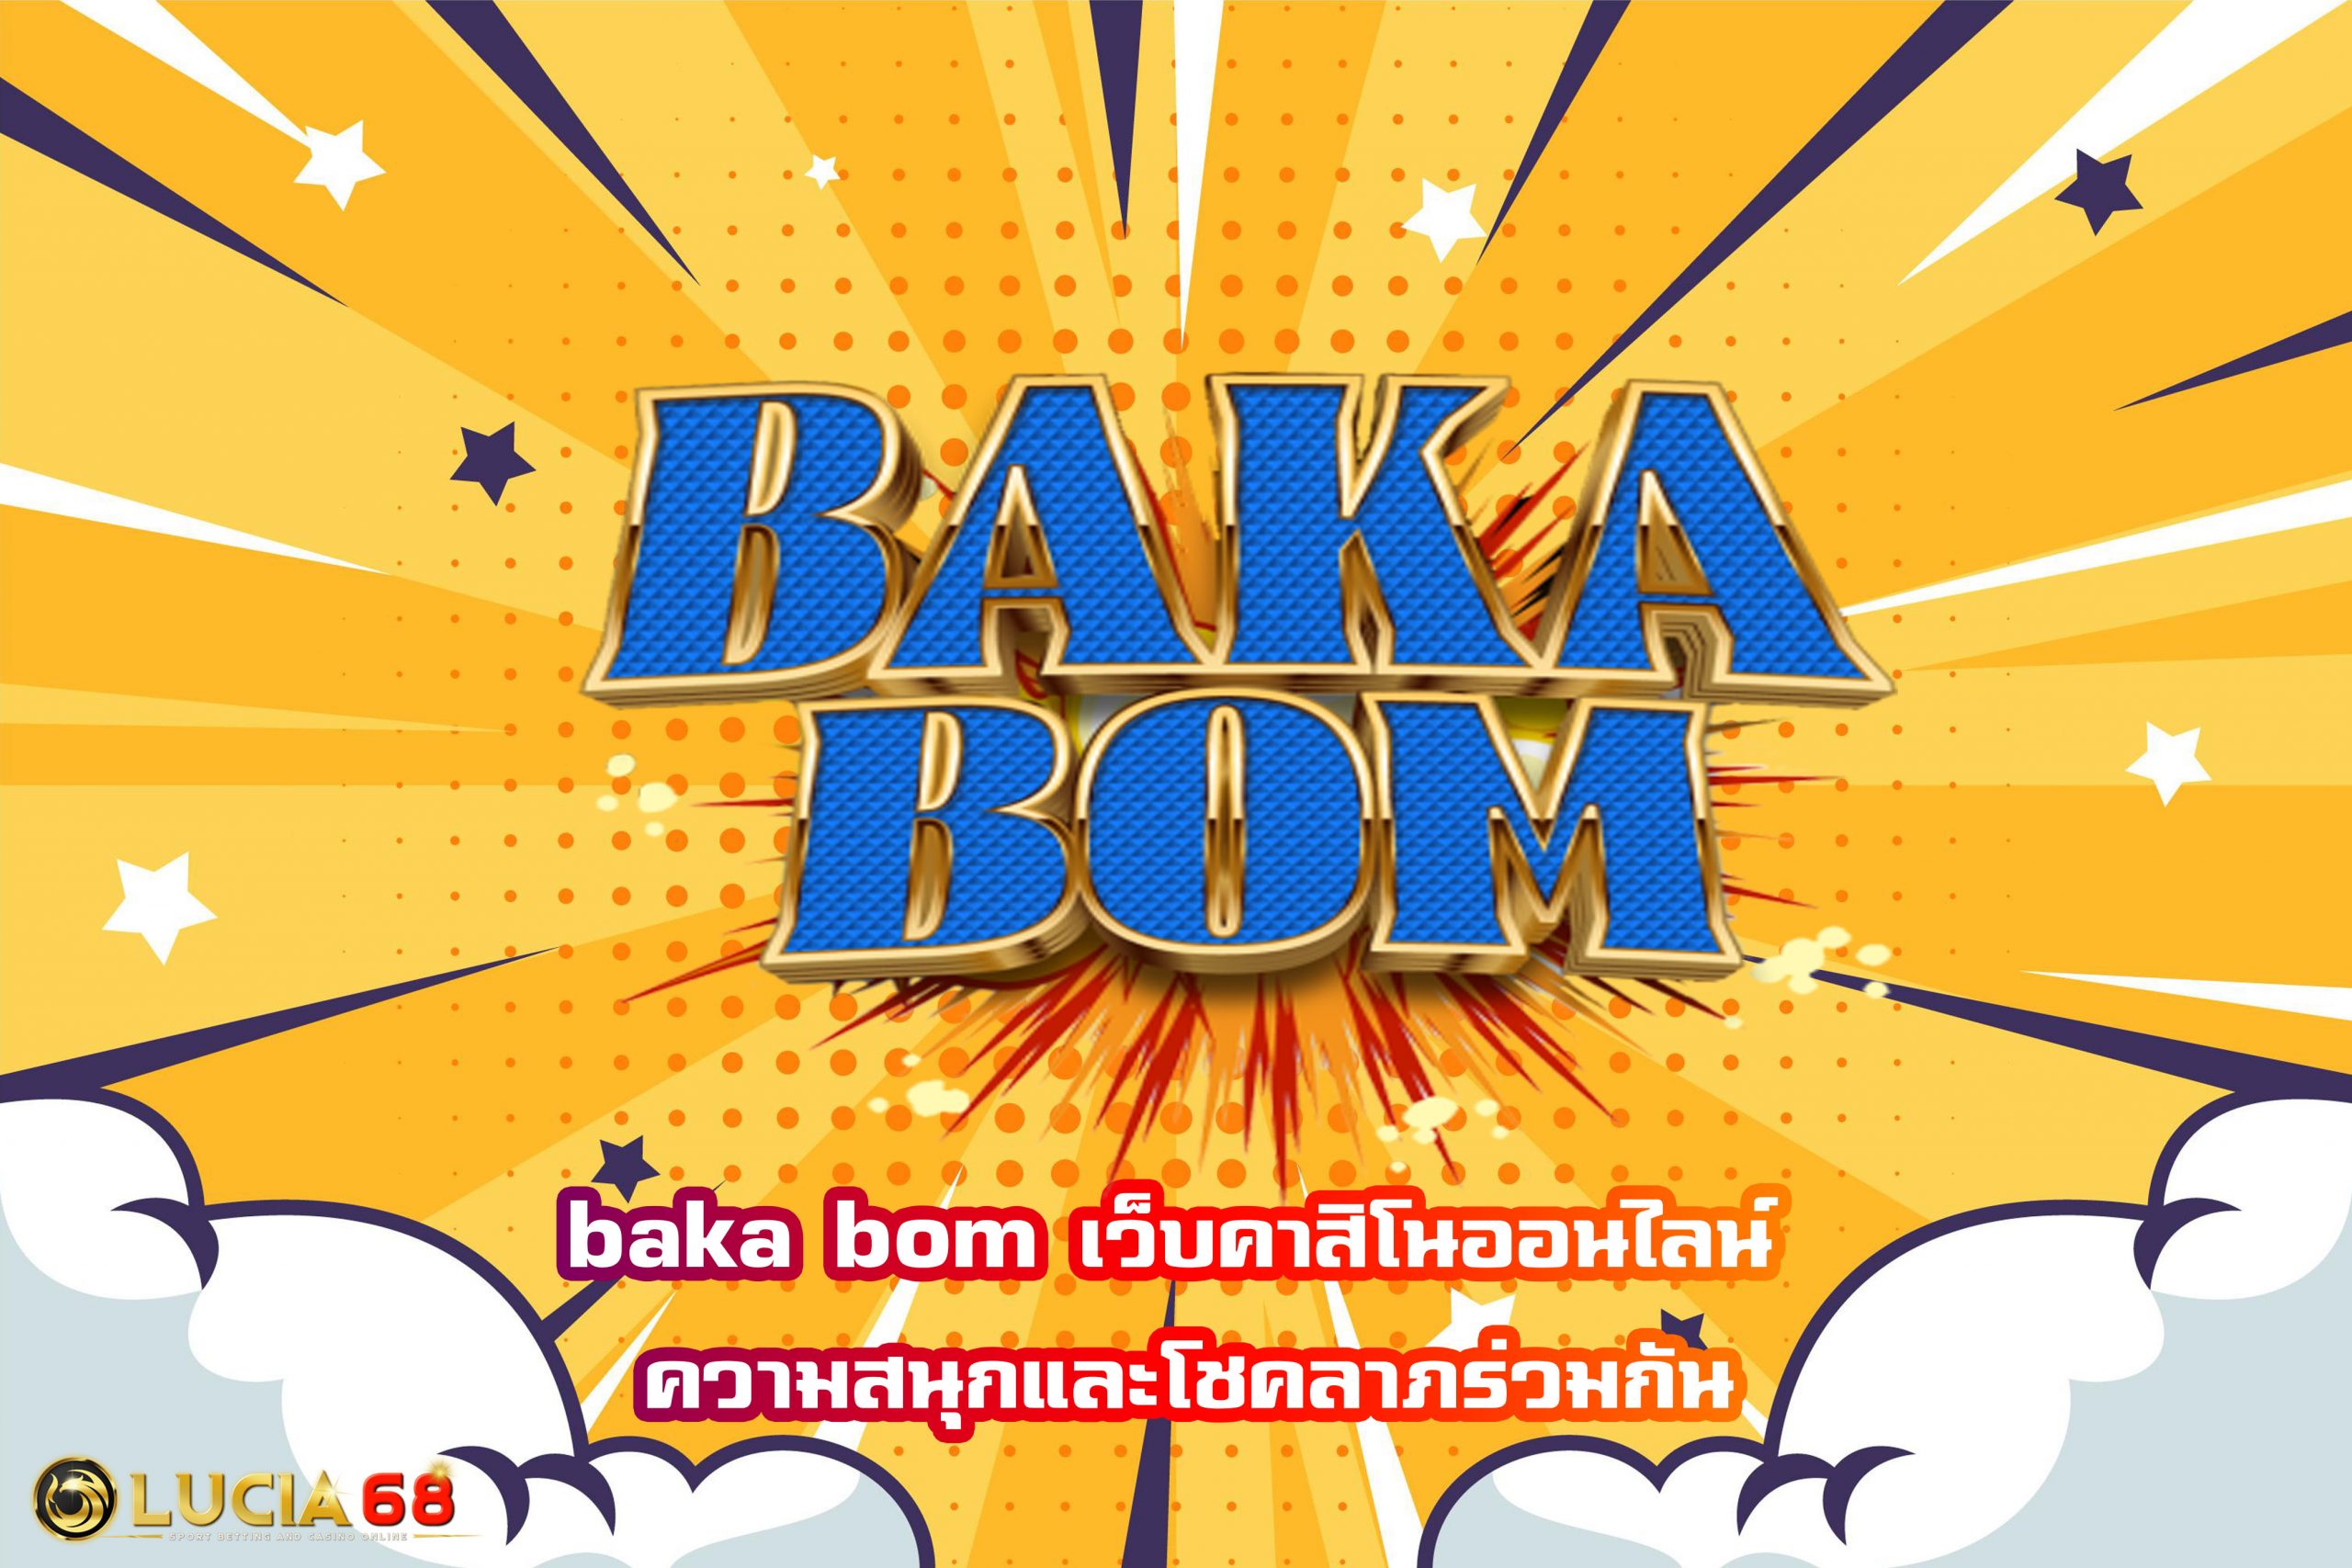 baka bom เว็บคาสิโนออนไลน์ ความสนุกและโชคลาภร่วมกัน